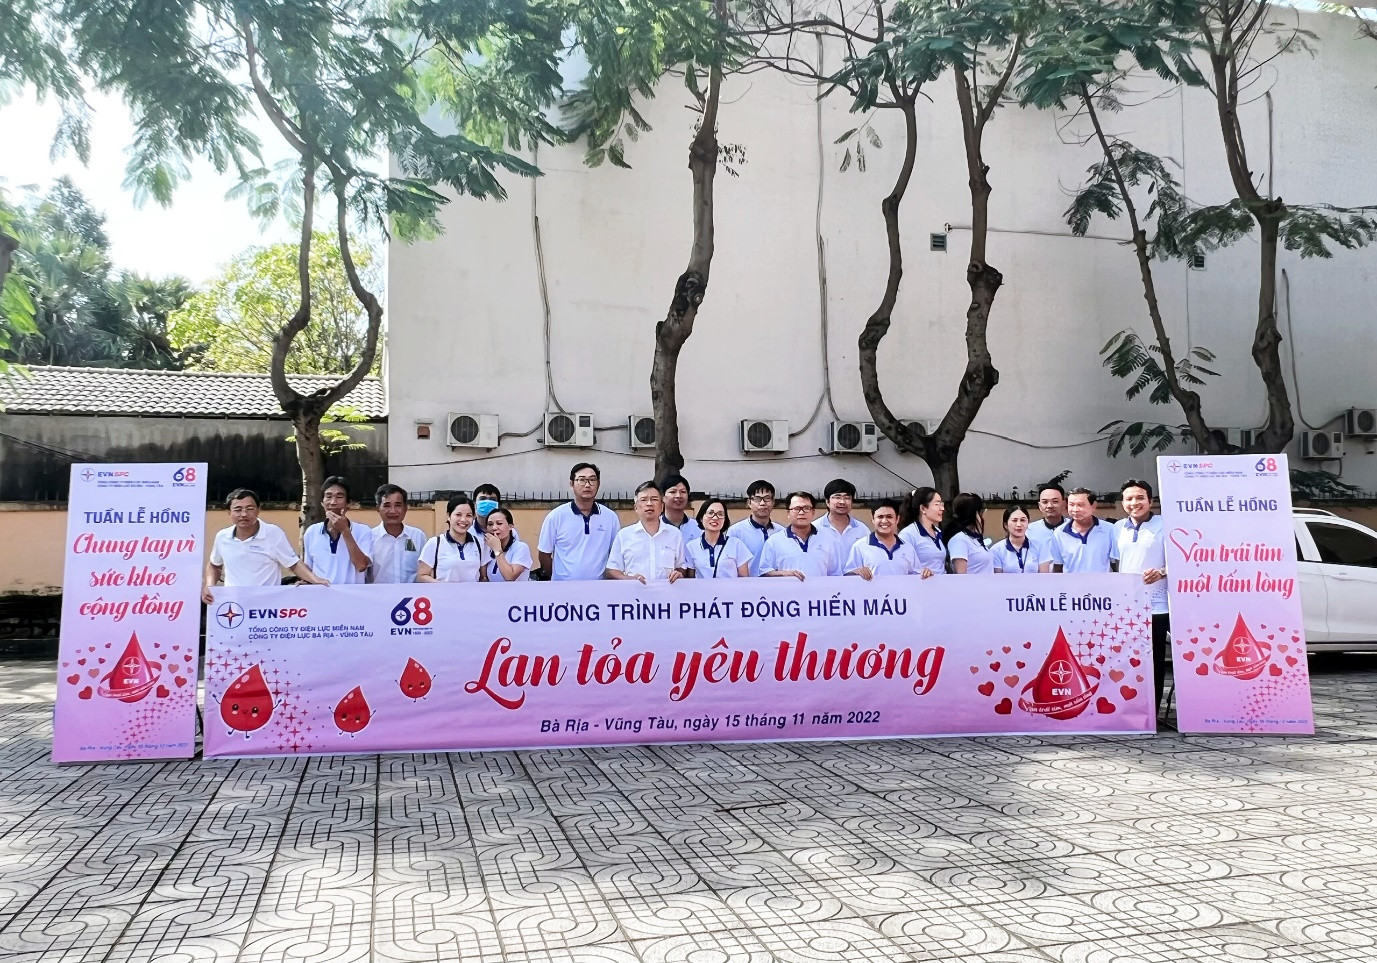 PC Bà Rịa – Vũng Tàu tham gia hiến máu hưởng ứng Tuần lễ hồng.